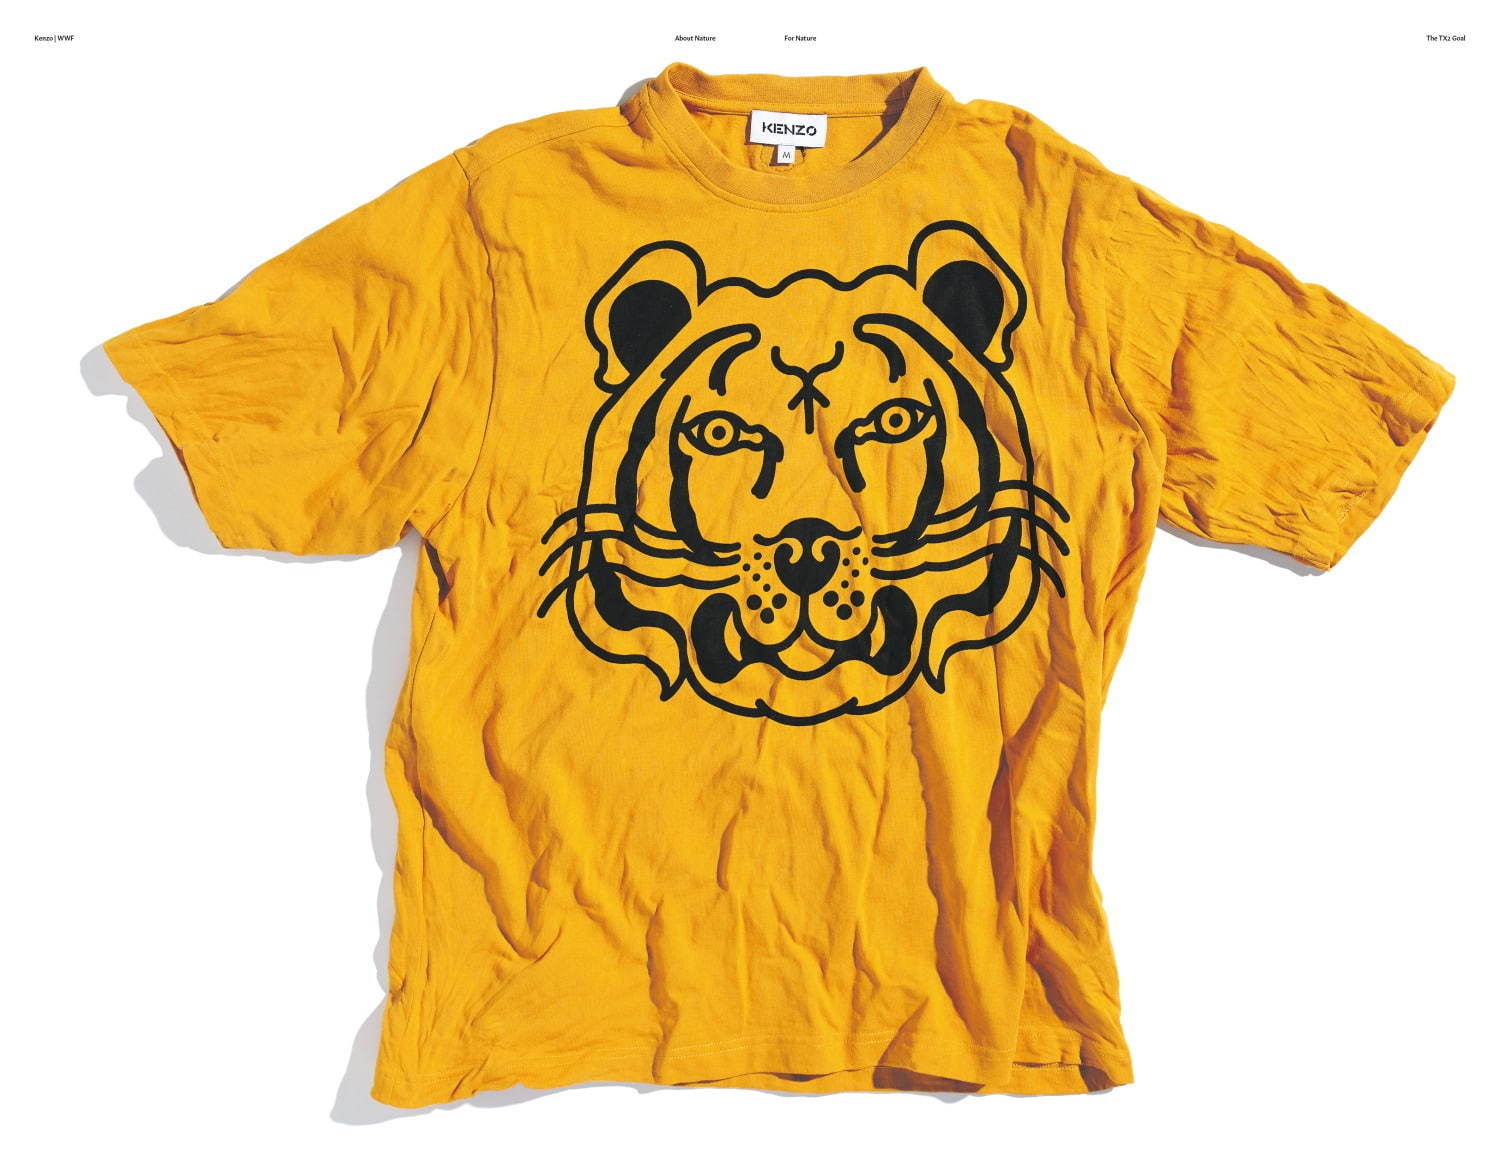 ケンゾー“タイガー”の立体刺繍入りフーディやTシャツ 